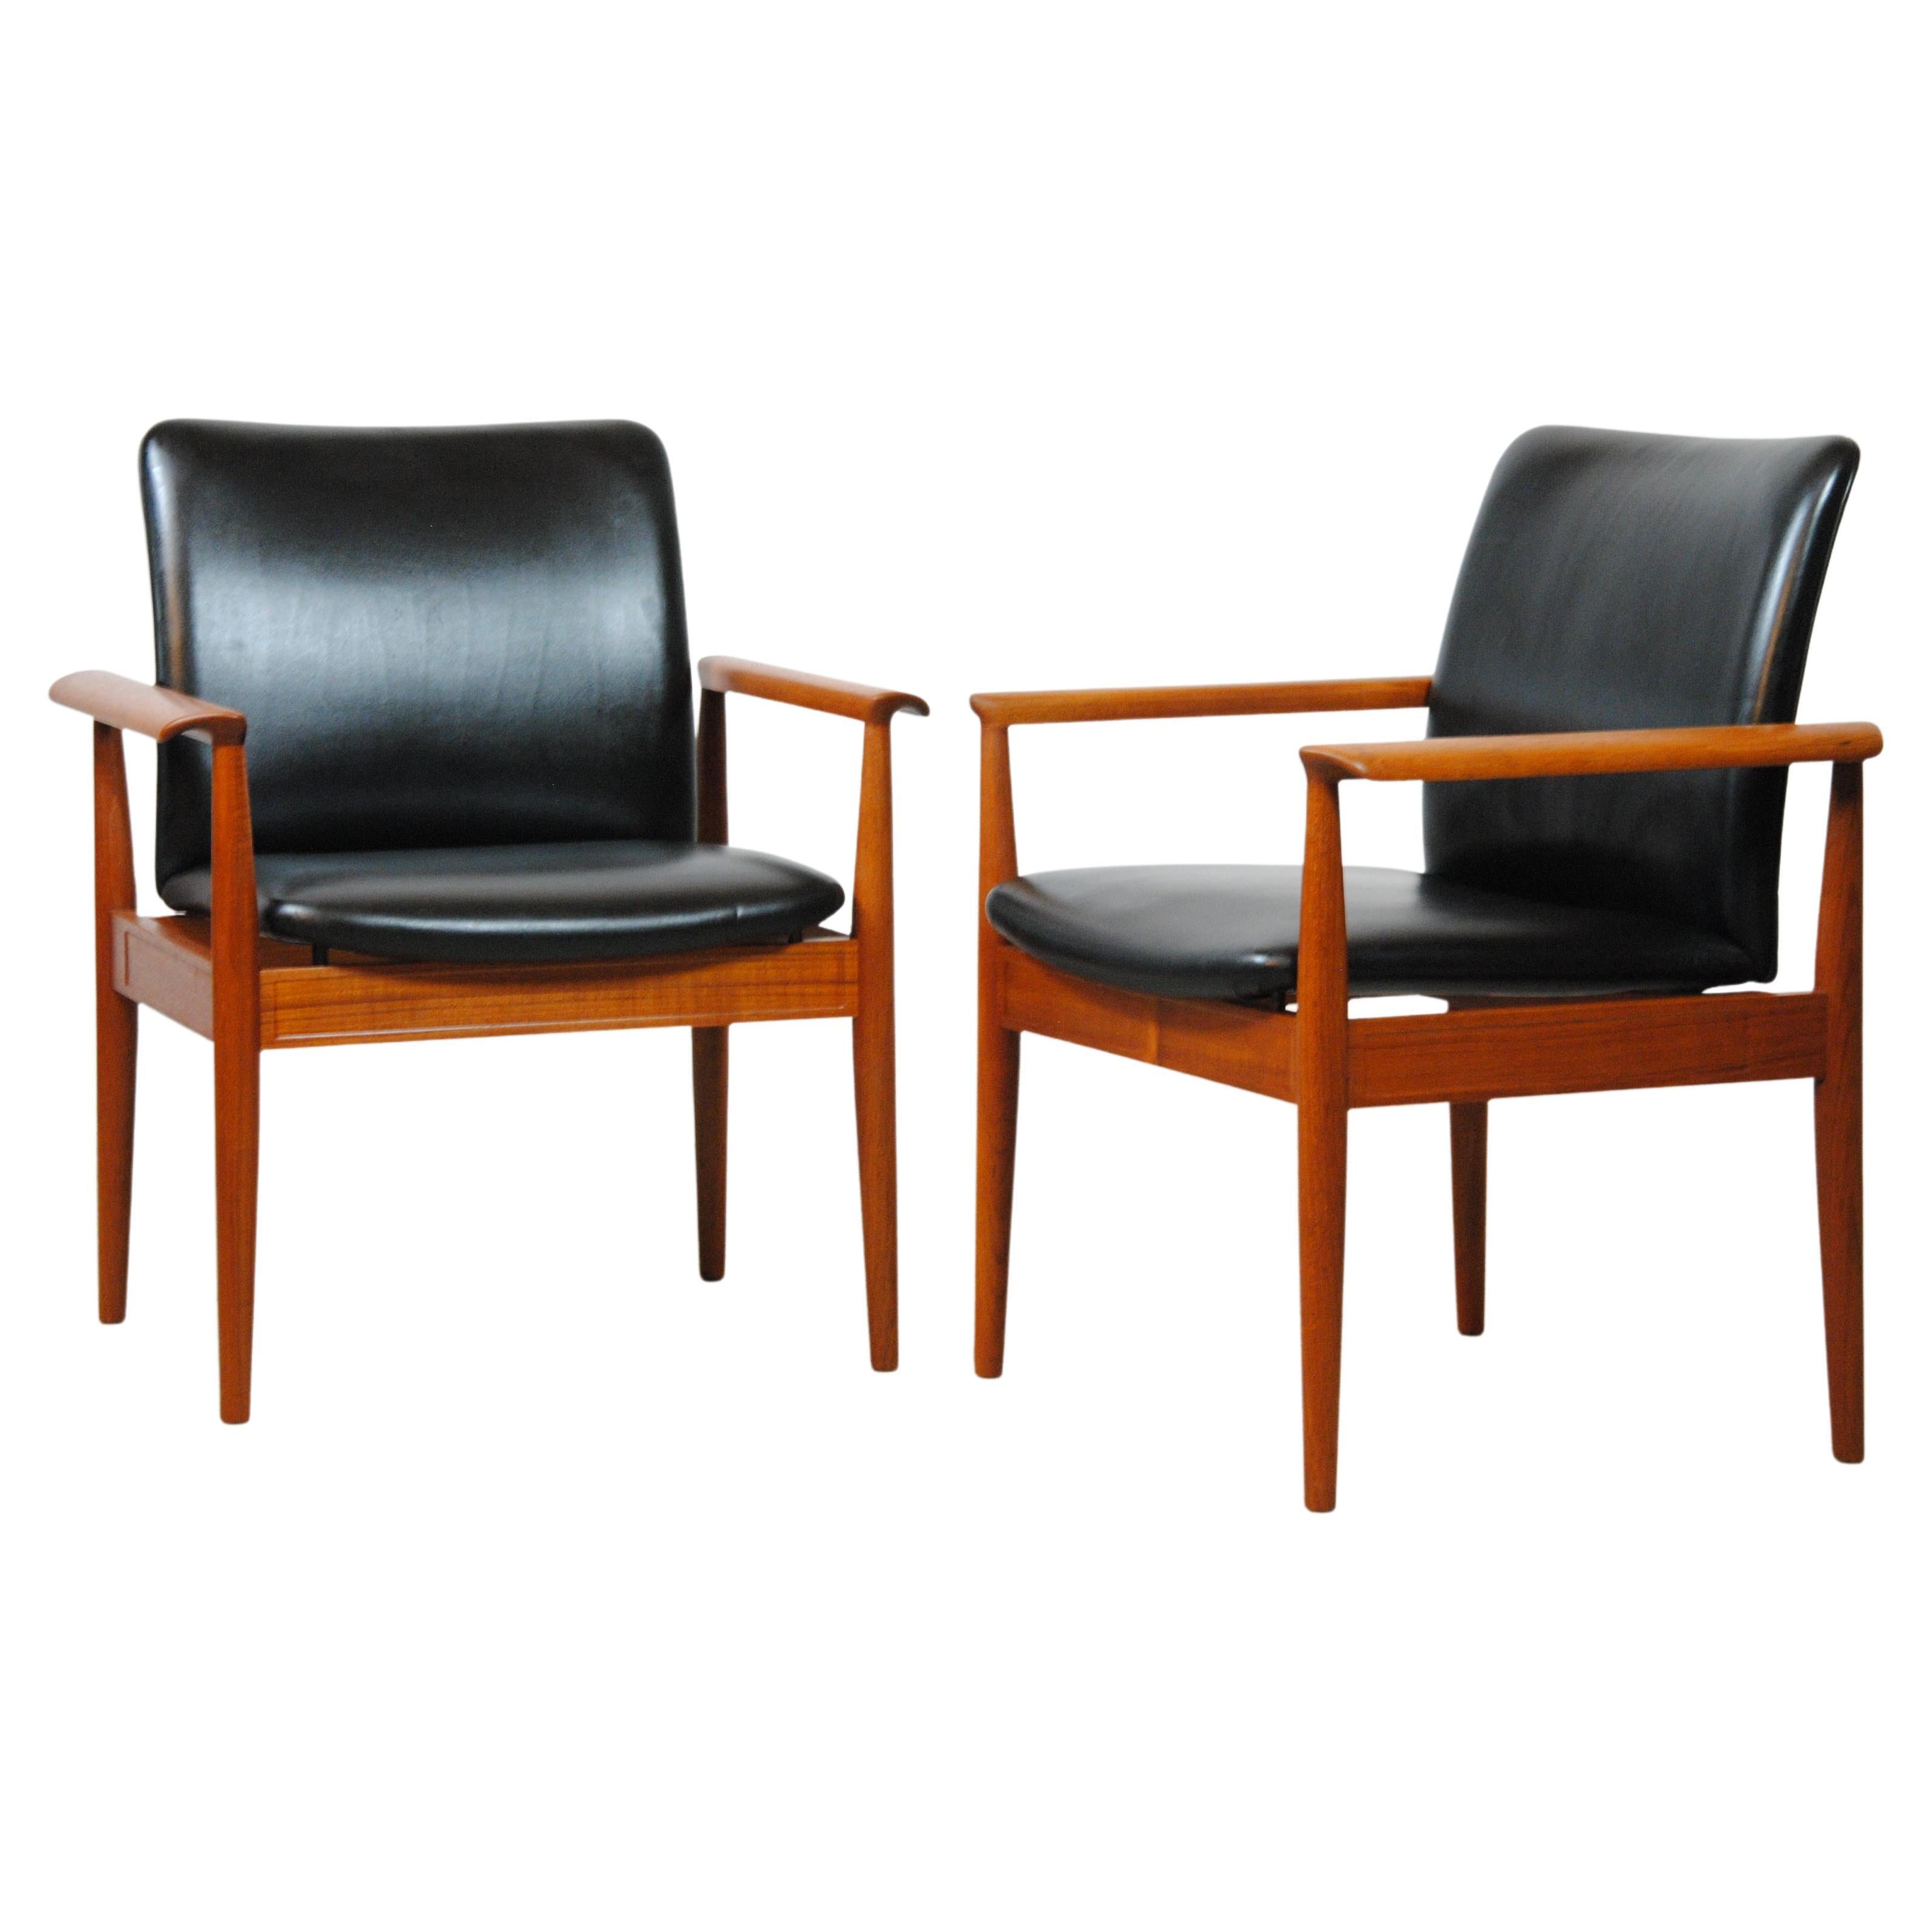 Finn Juhl: Zwei vollständig restaurierte Sessel aus Teakholz und Leder von Cado aus den 1960er Jahren